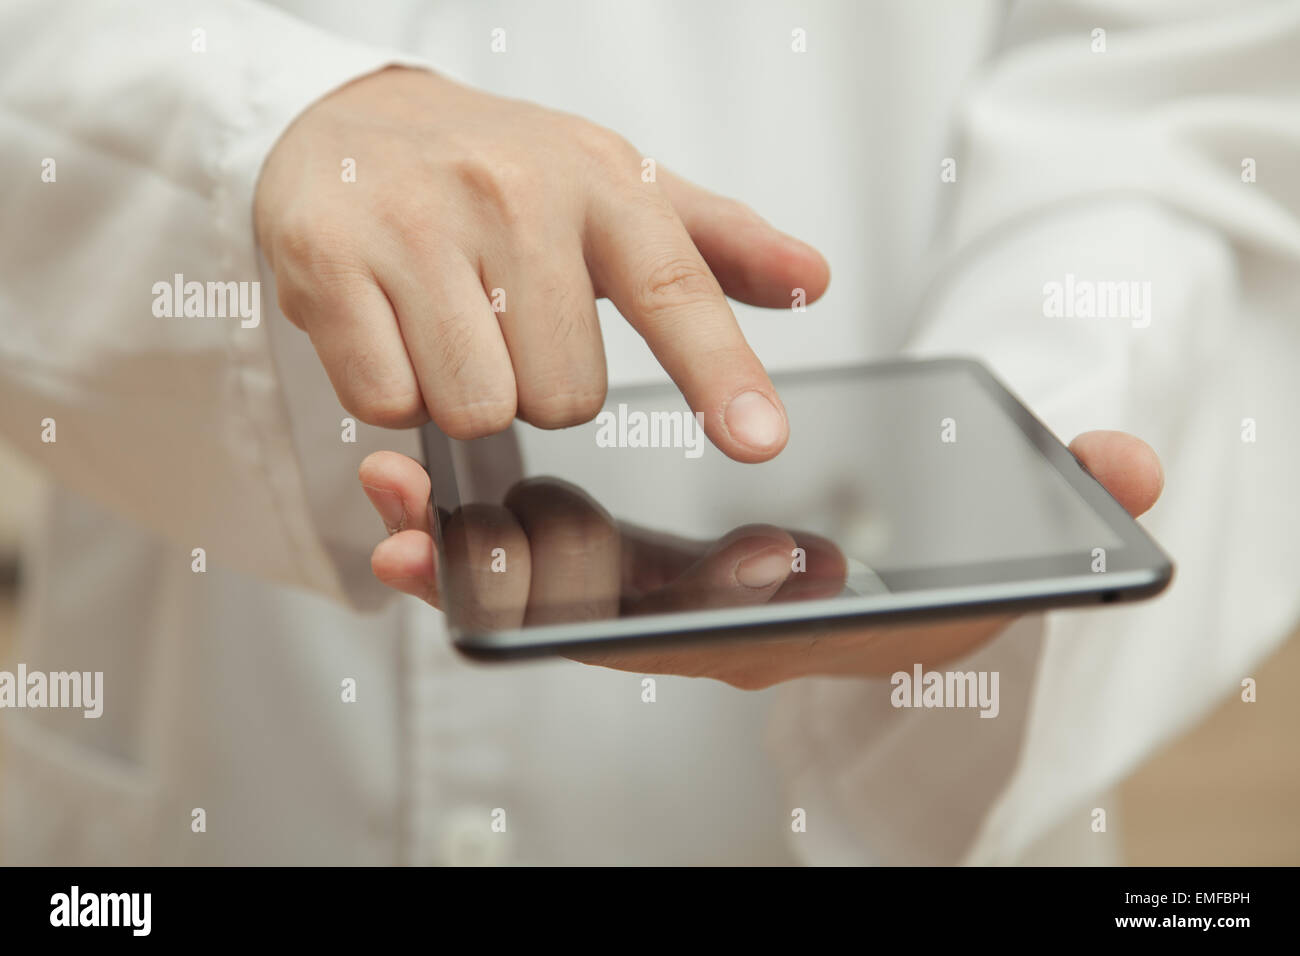 Médecin et de la technologie moderne, la main dans un manteau blanc fait un doigt dans le PC tablette Banque D'Images